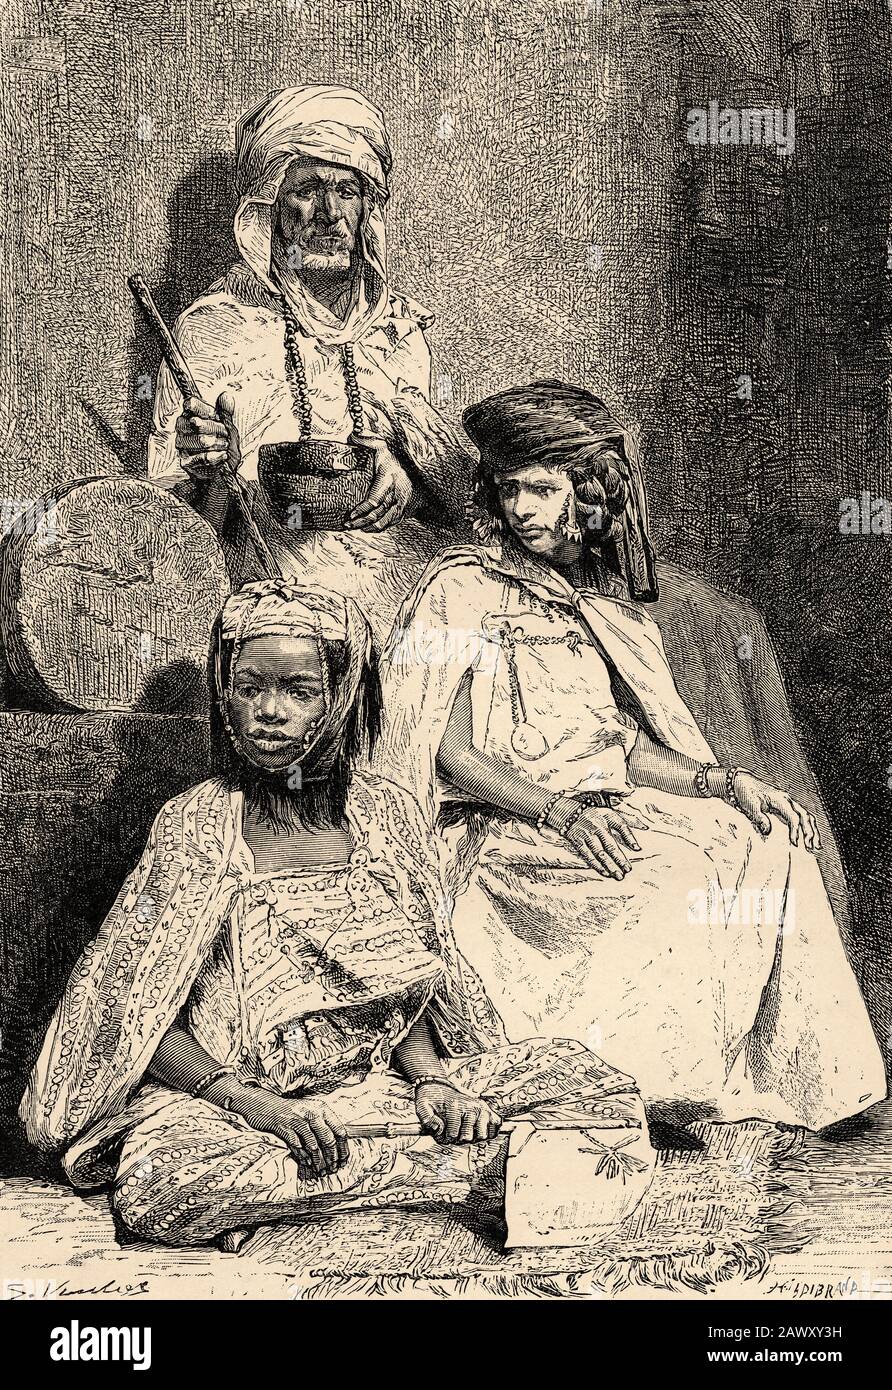 Portrait des femmes arabes mendiantes, Biskra et El-kantra, Algérie. Afrique Du Nord. Ancienne illustration de gravure du livre Nueva Geografia Universa Banque D'Images